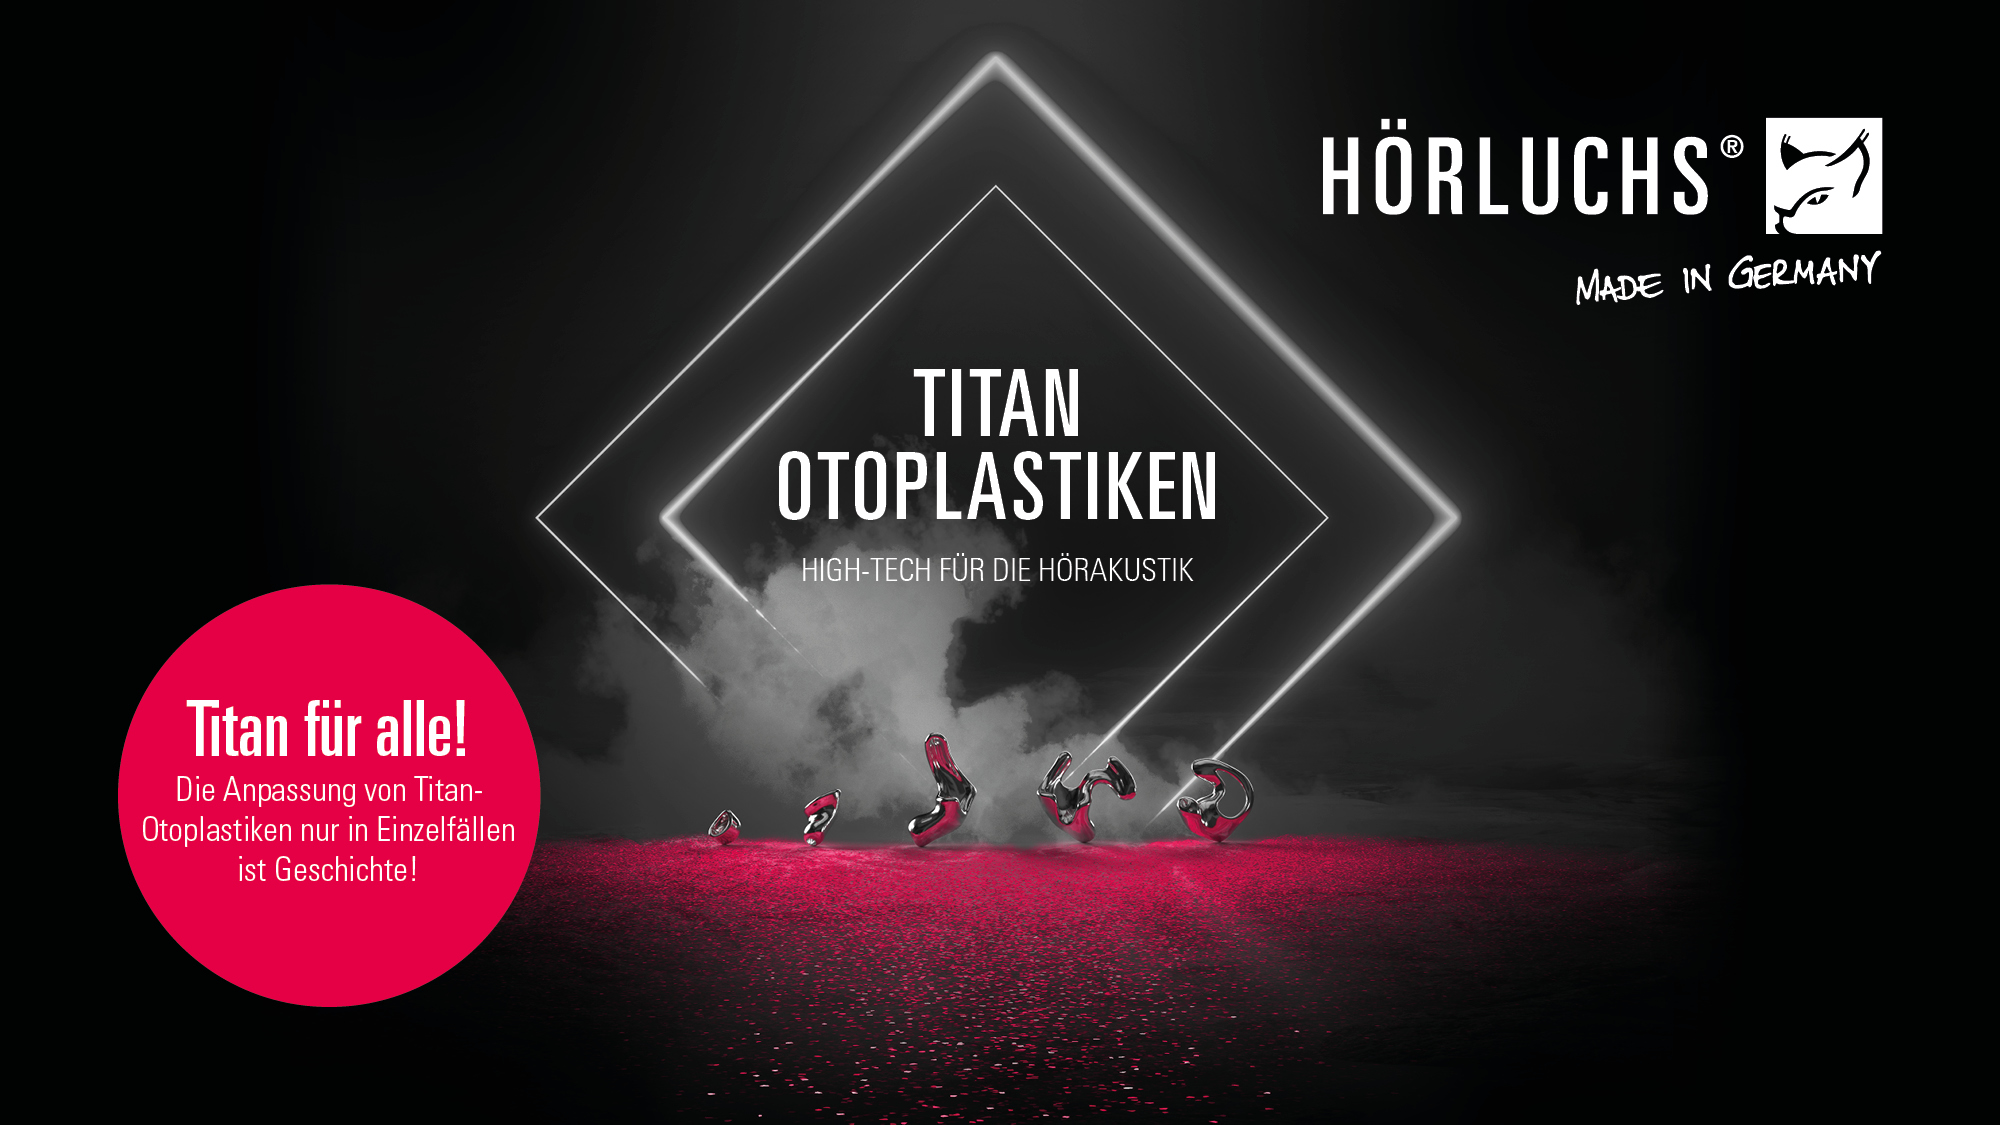 Neue Hörluchs Otoplastiken versprechen "Titan für alle!"